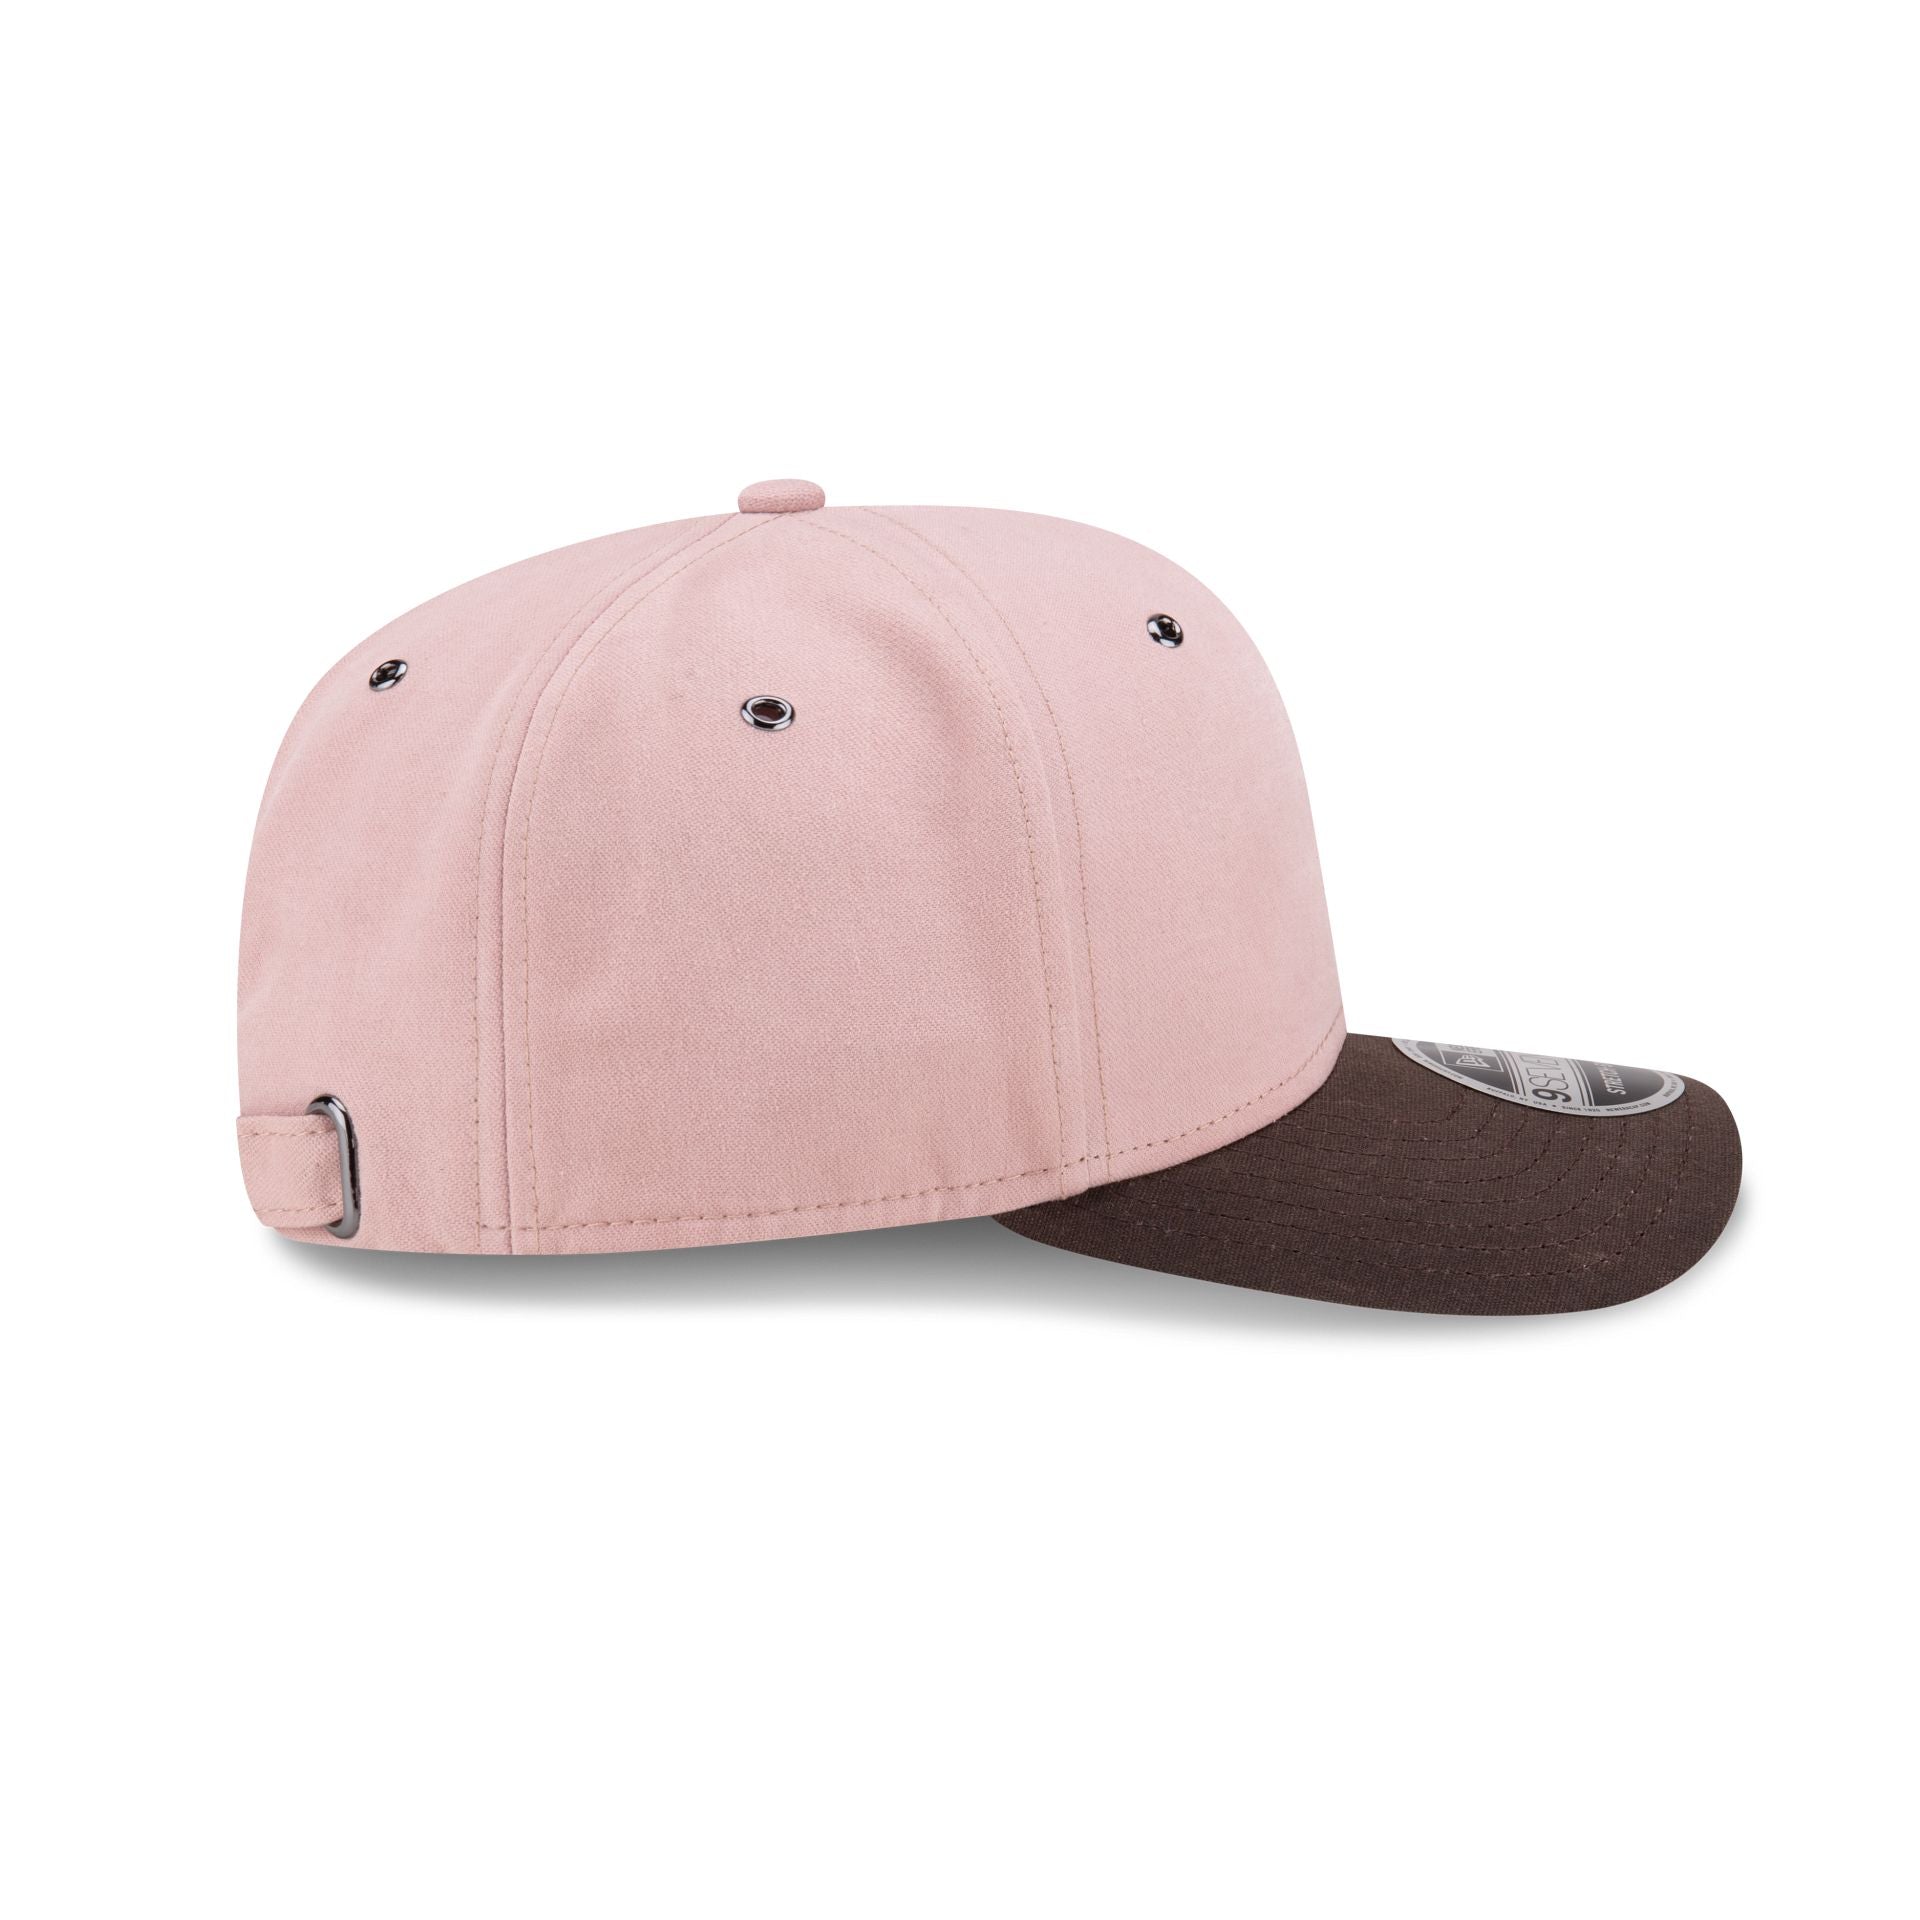 New Era Cap Pink 9SEVENTY Adjustable Hat